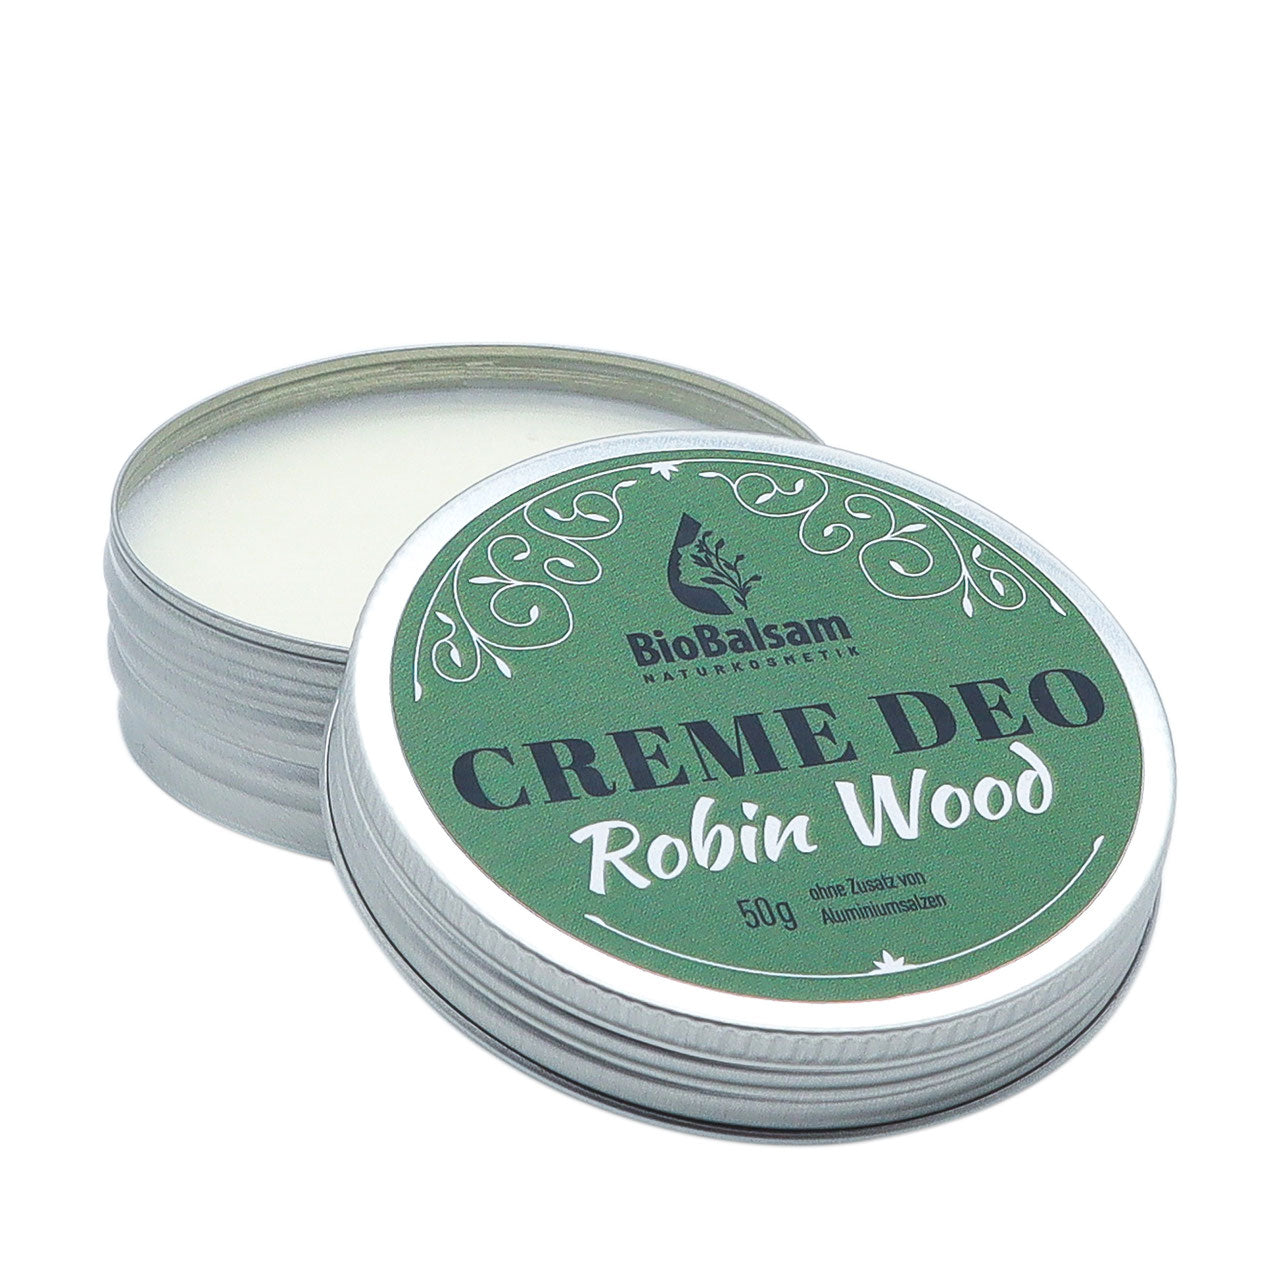 BioBalsam Creme Deo Robin Wood